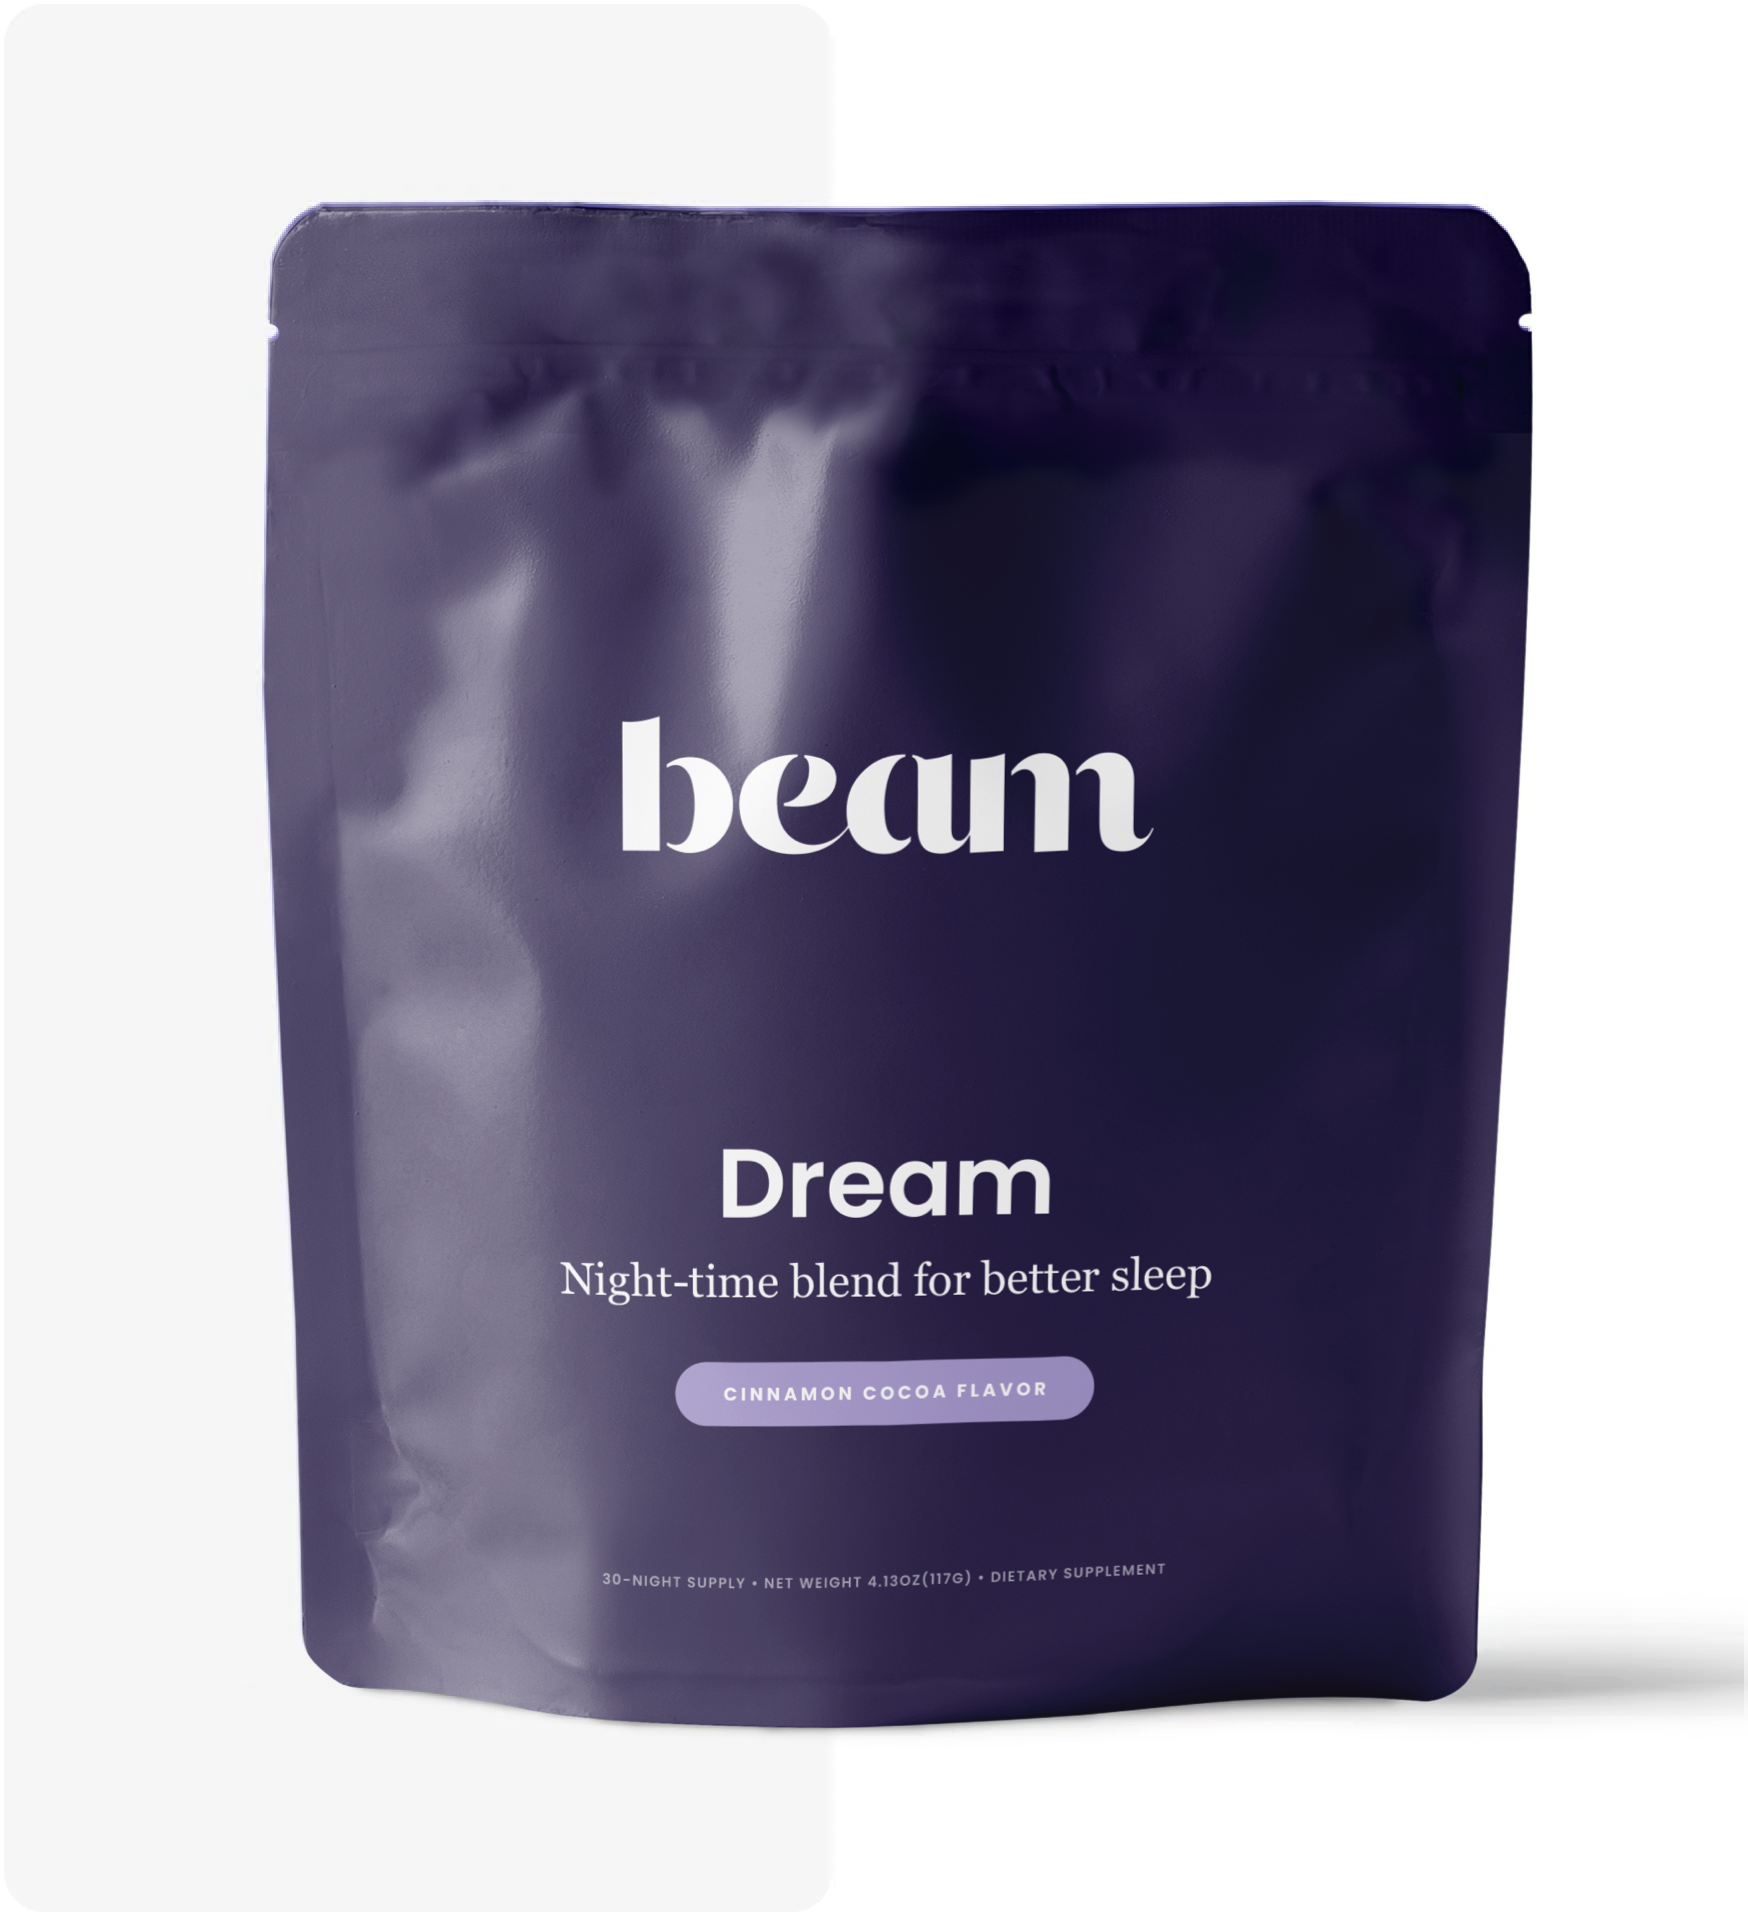 Beam Dream in a bag